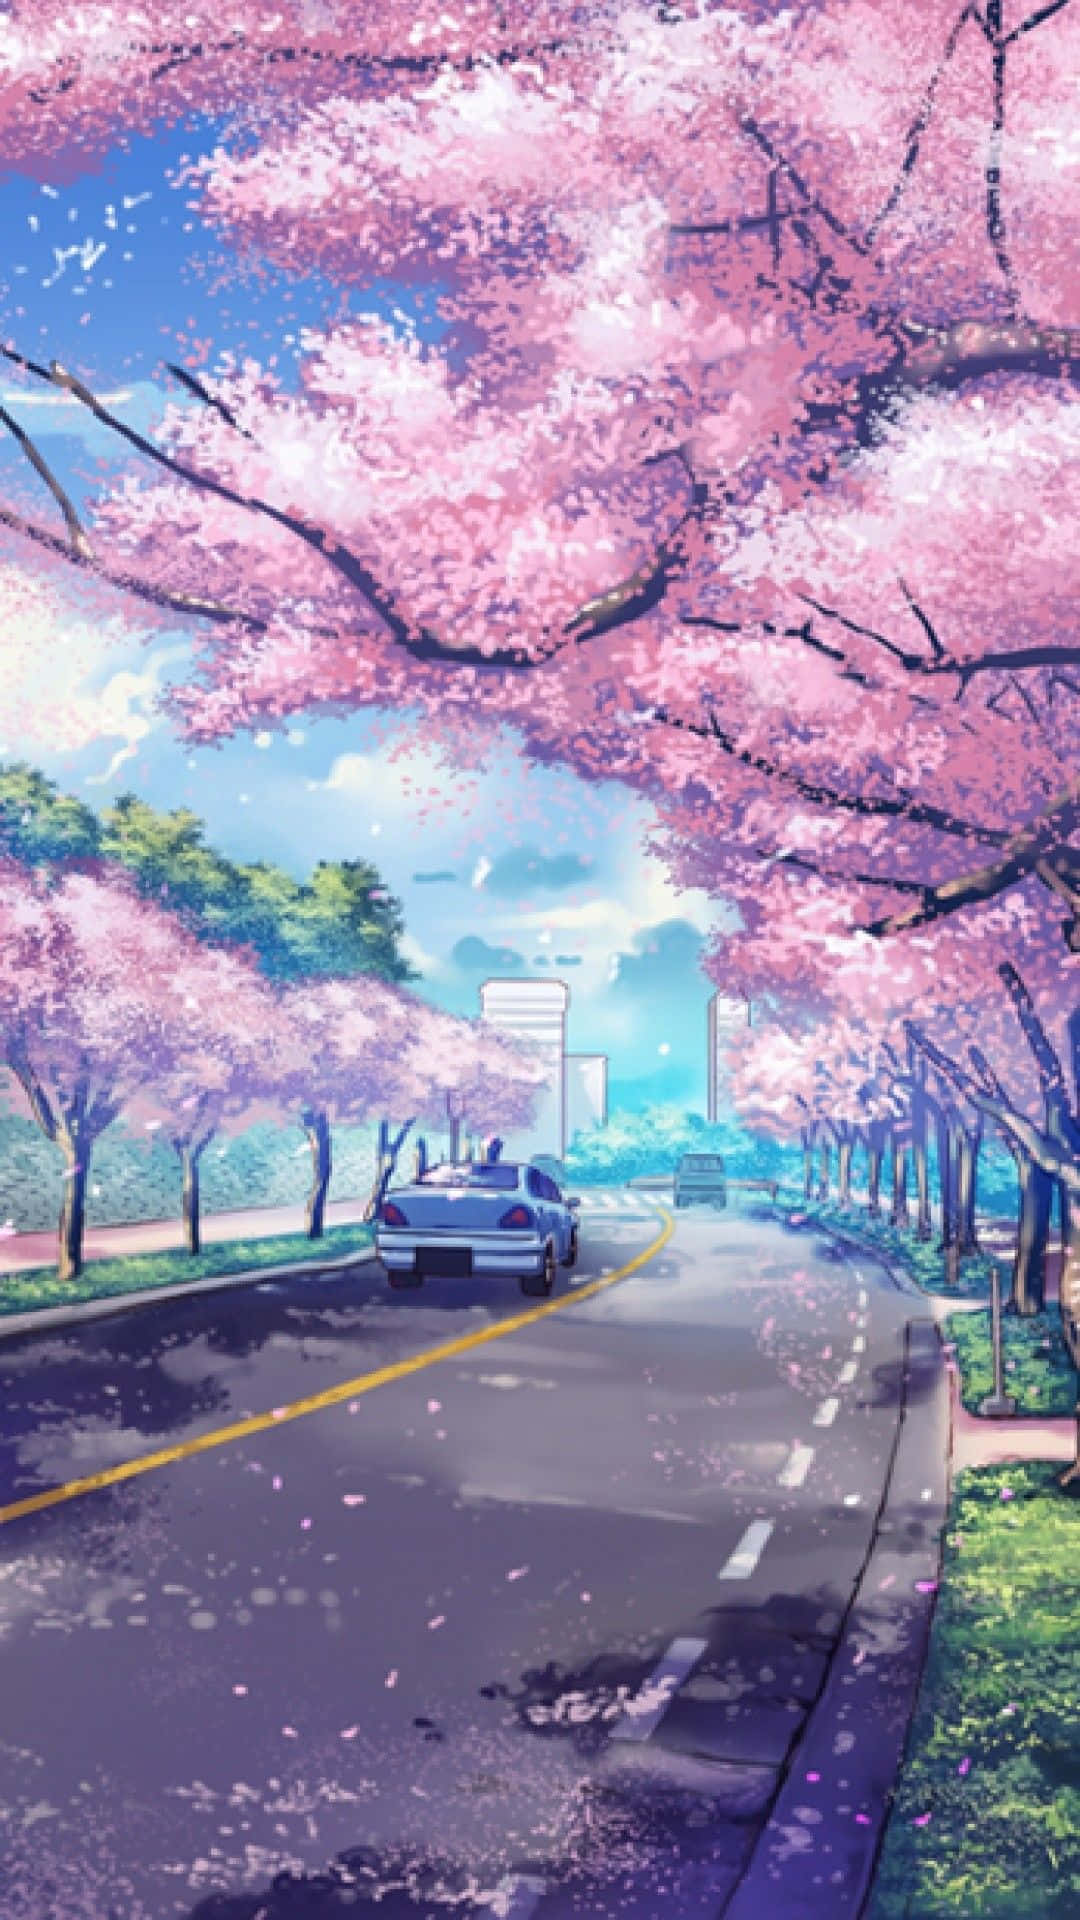 Vårenhar Kommit Som Visas I Denna Vackra Anime-scenery Med Körsbärsblommor. Wallpaper